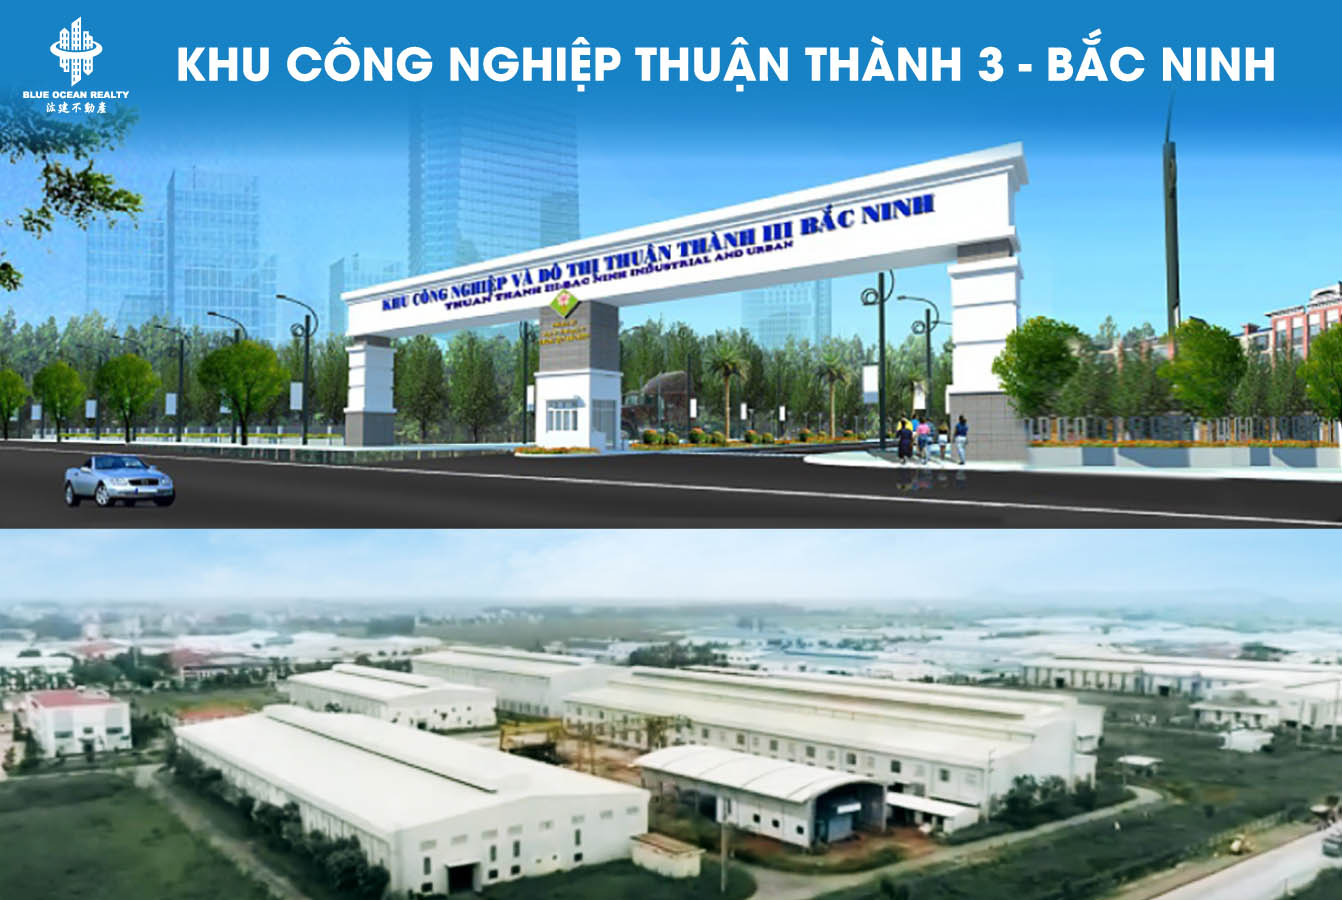 Khu công nghiệp Thuận Thành 3 - Bắc Ninh